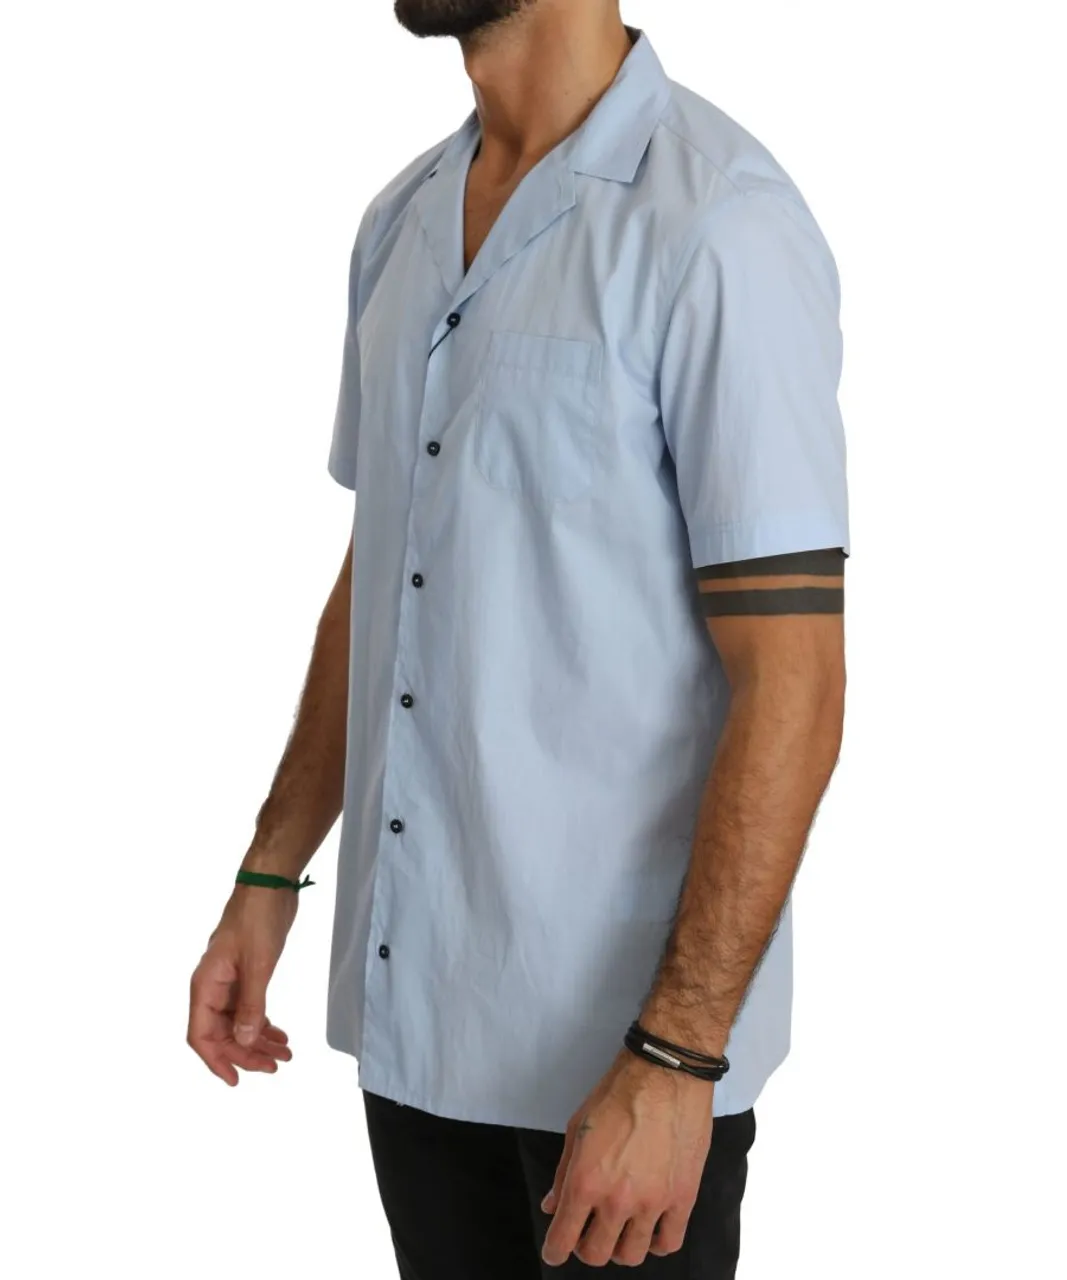 Dolce & Gabbana Mens Blue Short Sleeve 100% Cotton Top Shirt